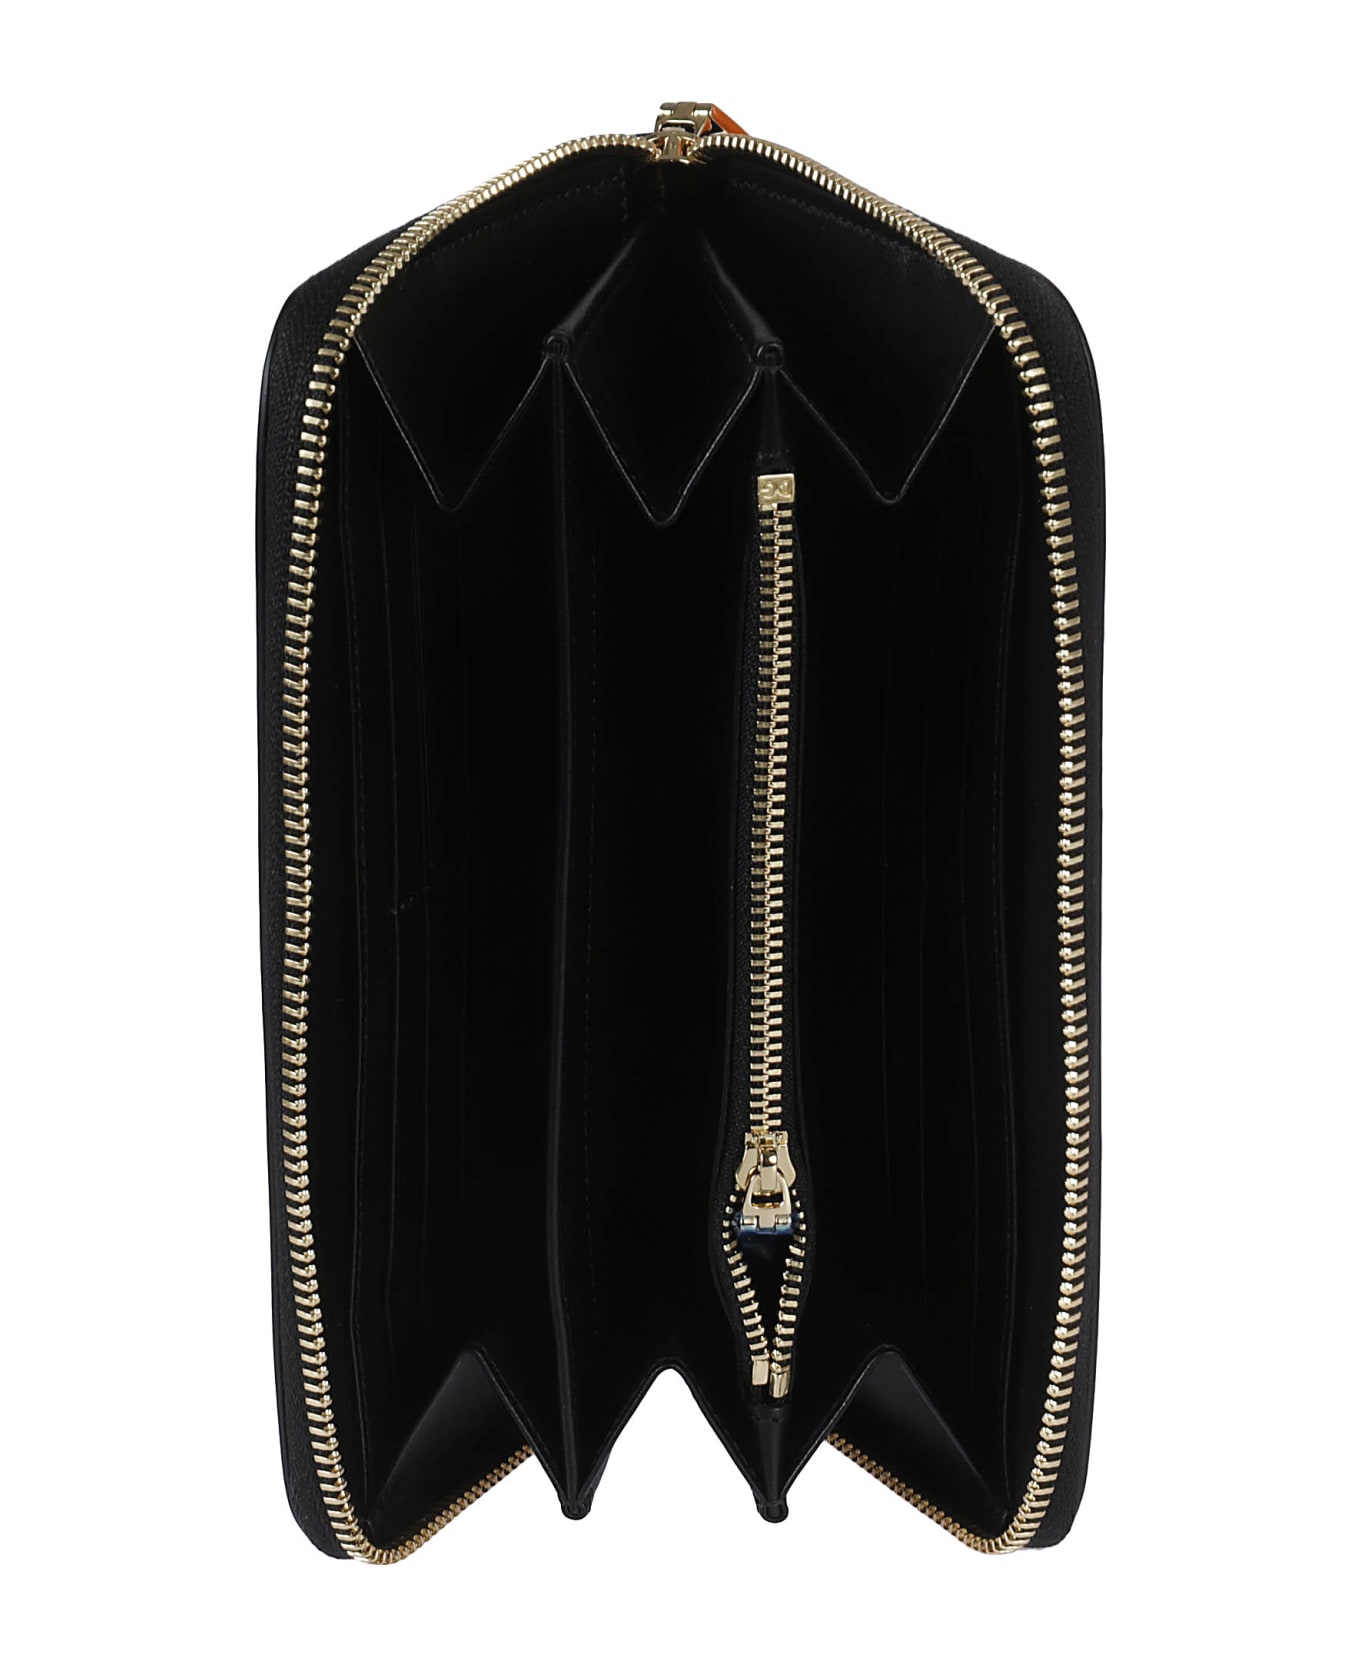 Dolce bag & Gabbana Zip-around Leather Zip-around Wallet - Black